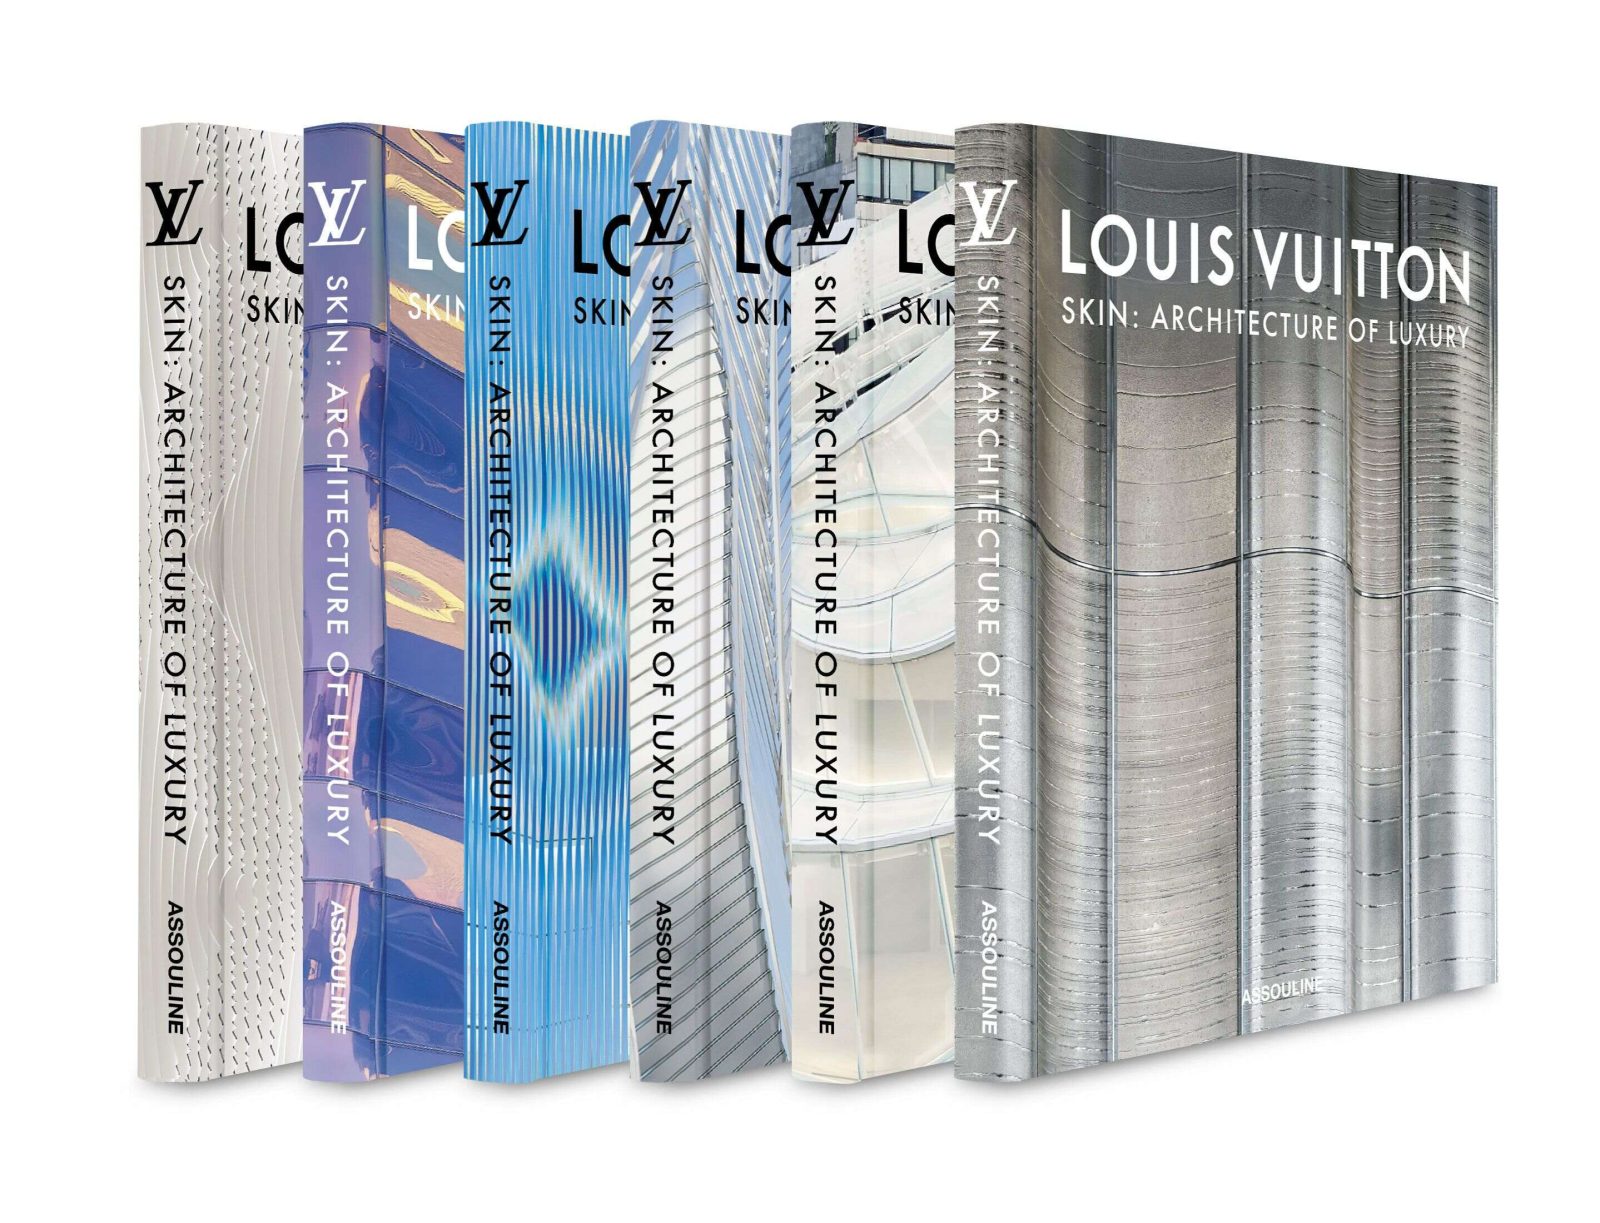 Maison Assouline And Louis Vuitton Launch Haute Book 'Louis